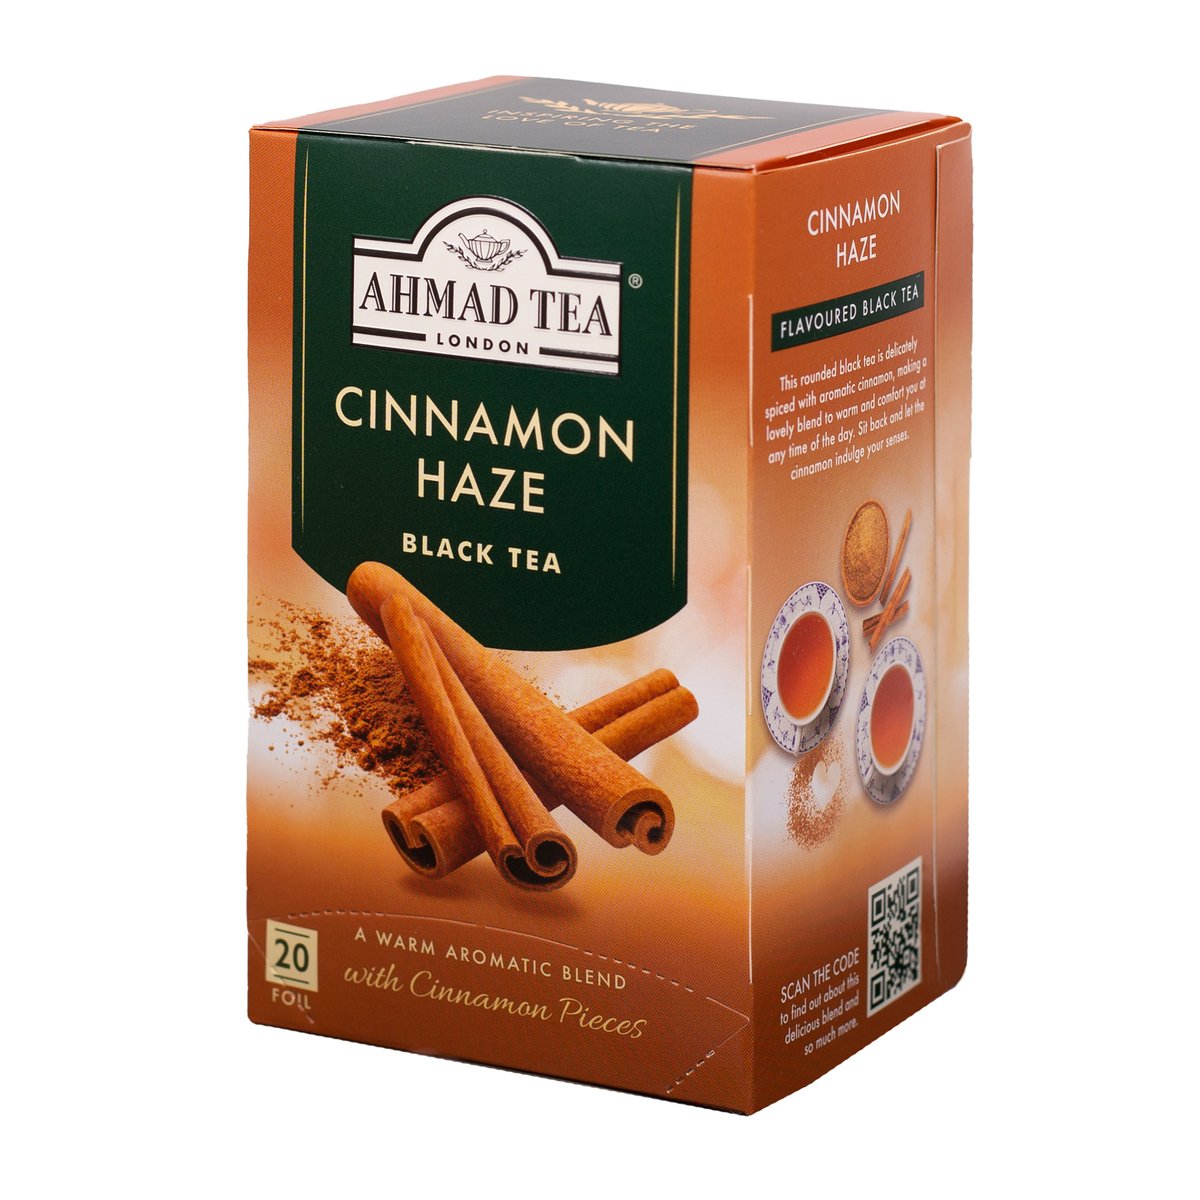 Ahmad Tea Cinnamon Haze Black Tea 20 Teabags